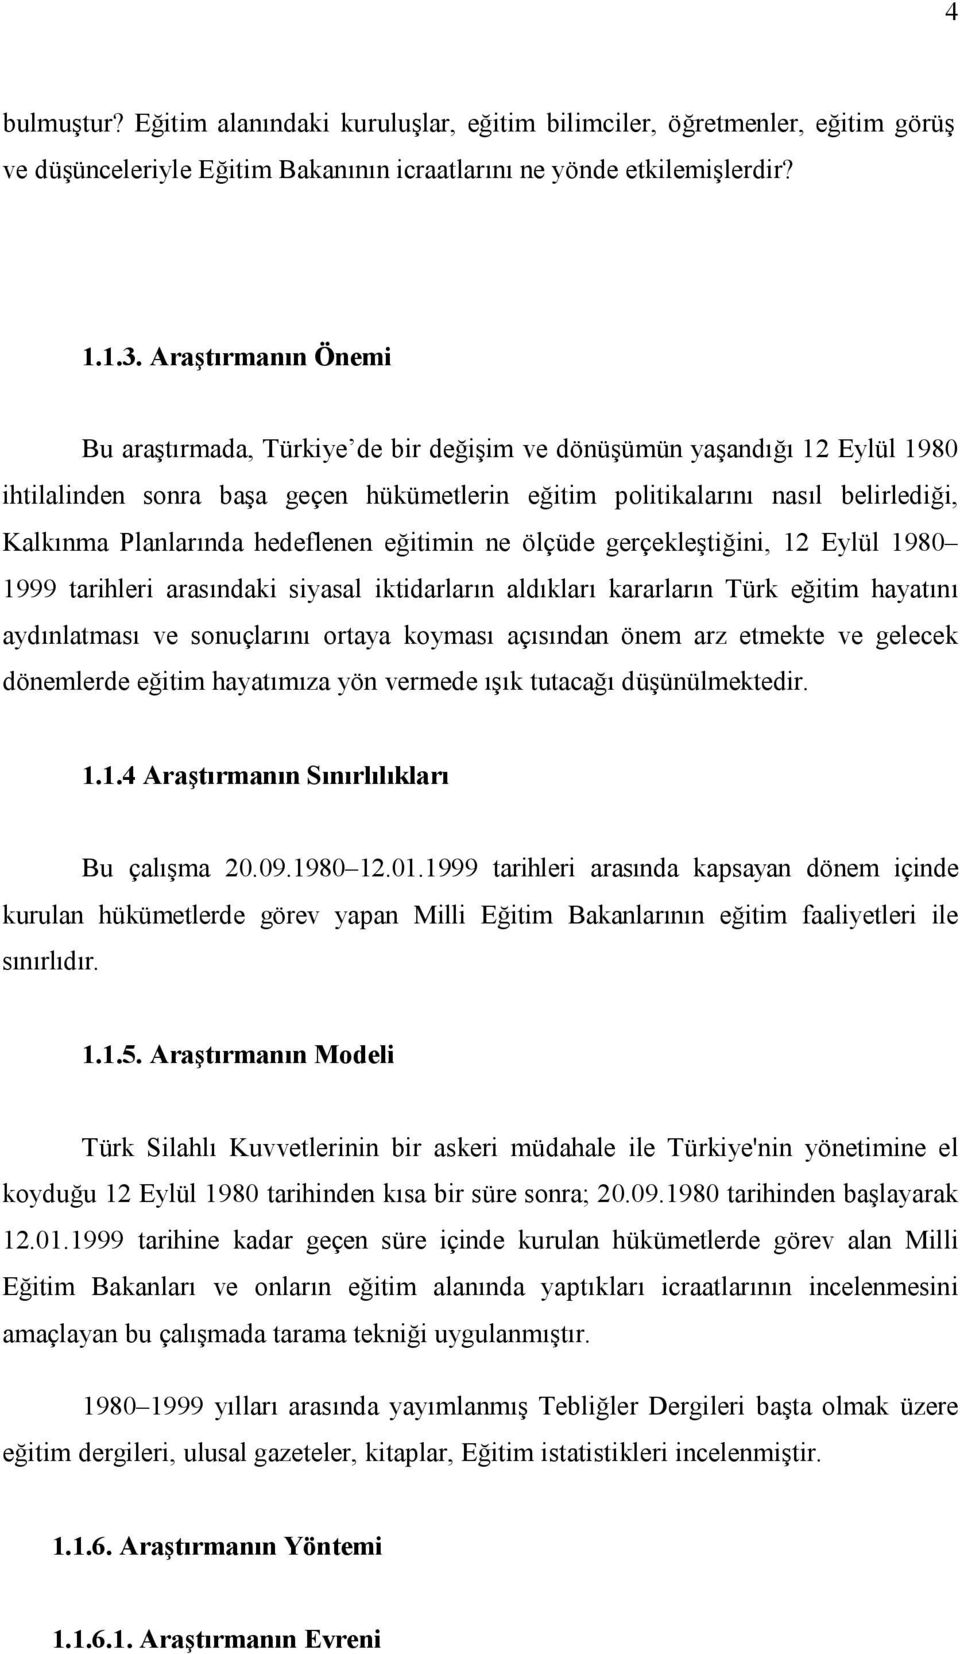 hedeflenen eğitimin ne ölçüde gerçekleştiğini, 12 Eylül 1980 1999 tarihleri arasındaki siyasal iktidarların aldıkları kararların Türk eğitim hayatını aydınlatması ve sonuçlarını ortaya koyması